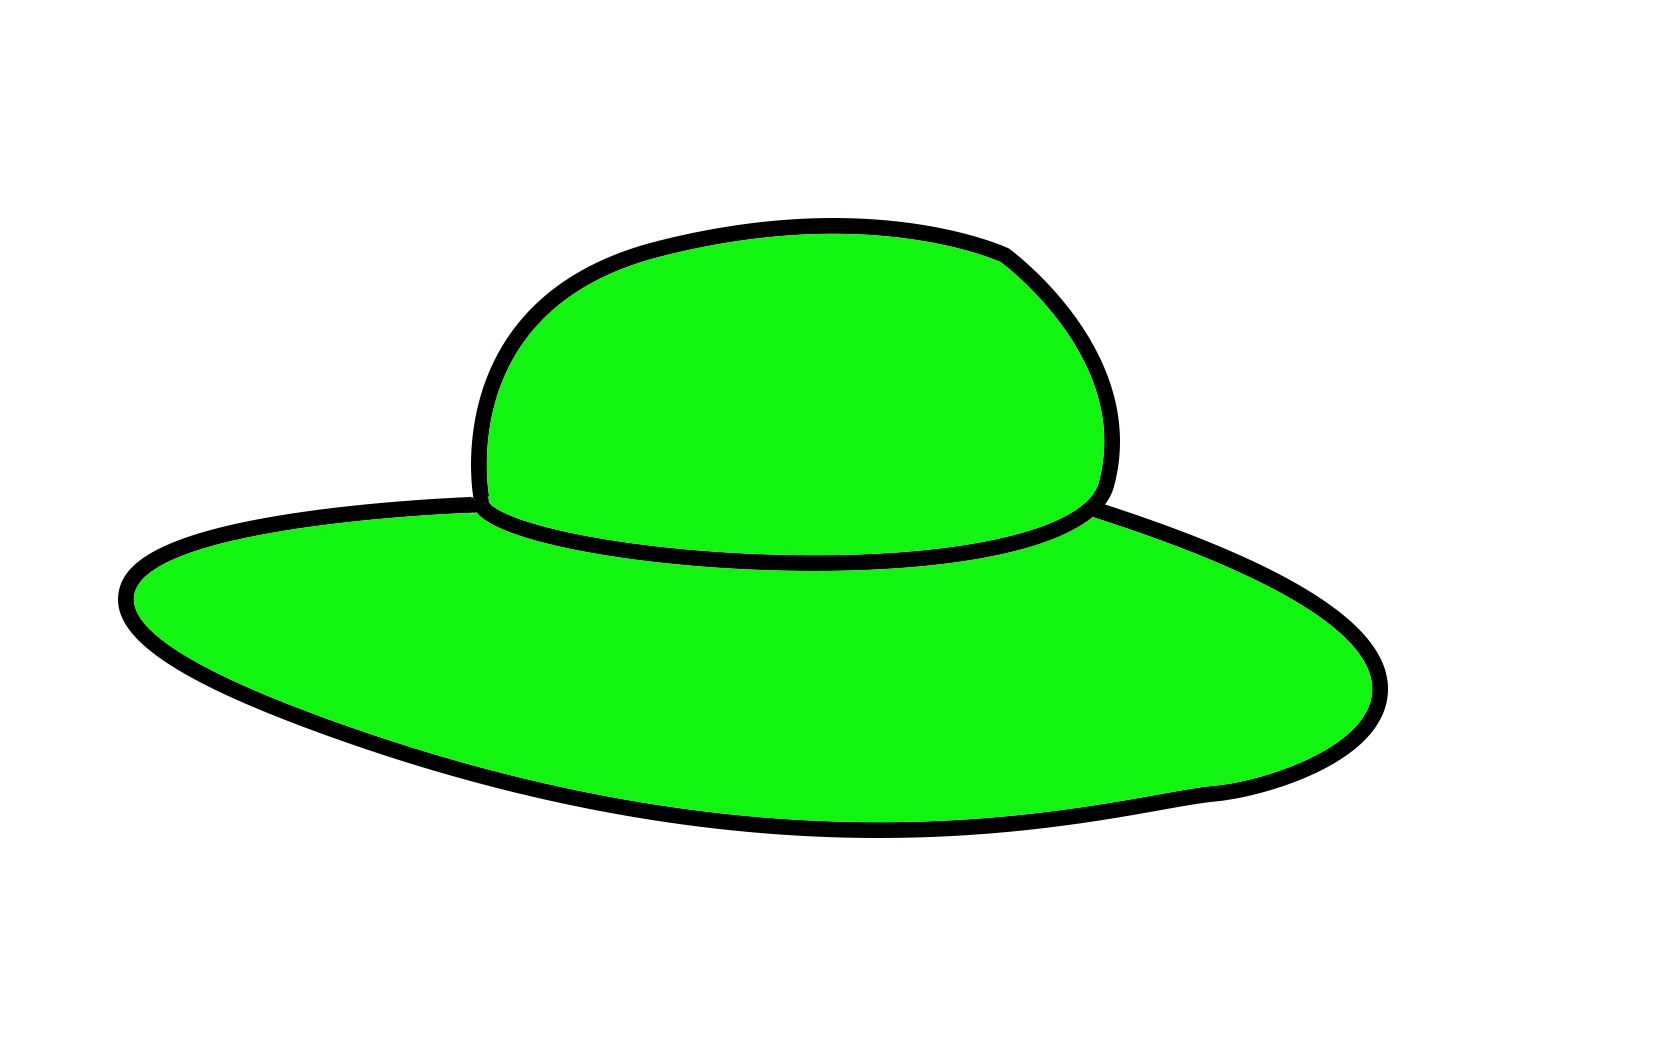 厂家定制绿色四叶草帽子 狂欢帽爱尔兰节绿帽子圣帕特里克节日帽-阿里巴巴